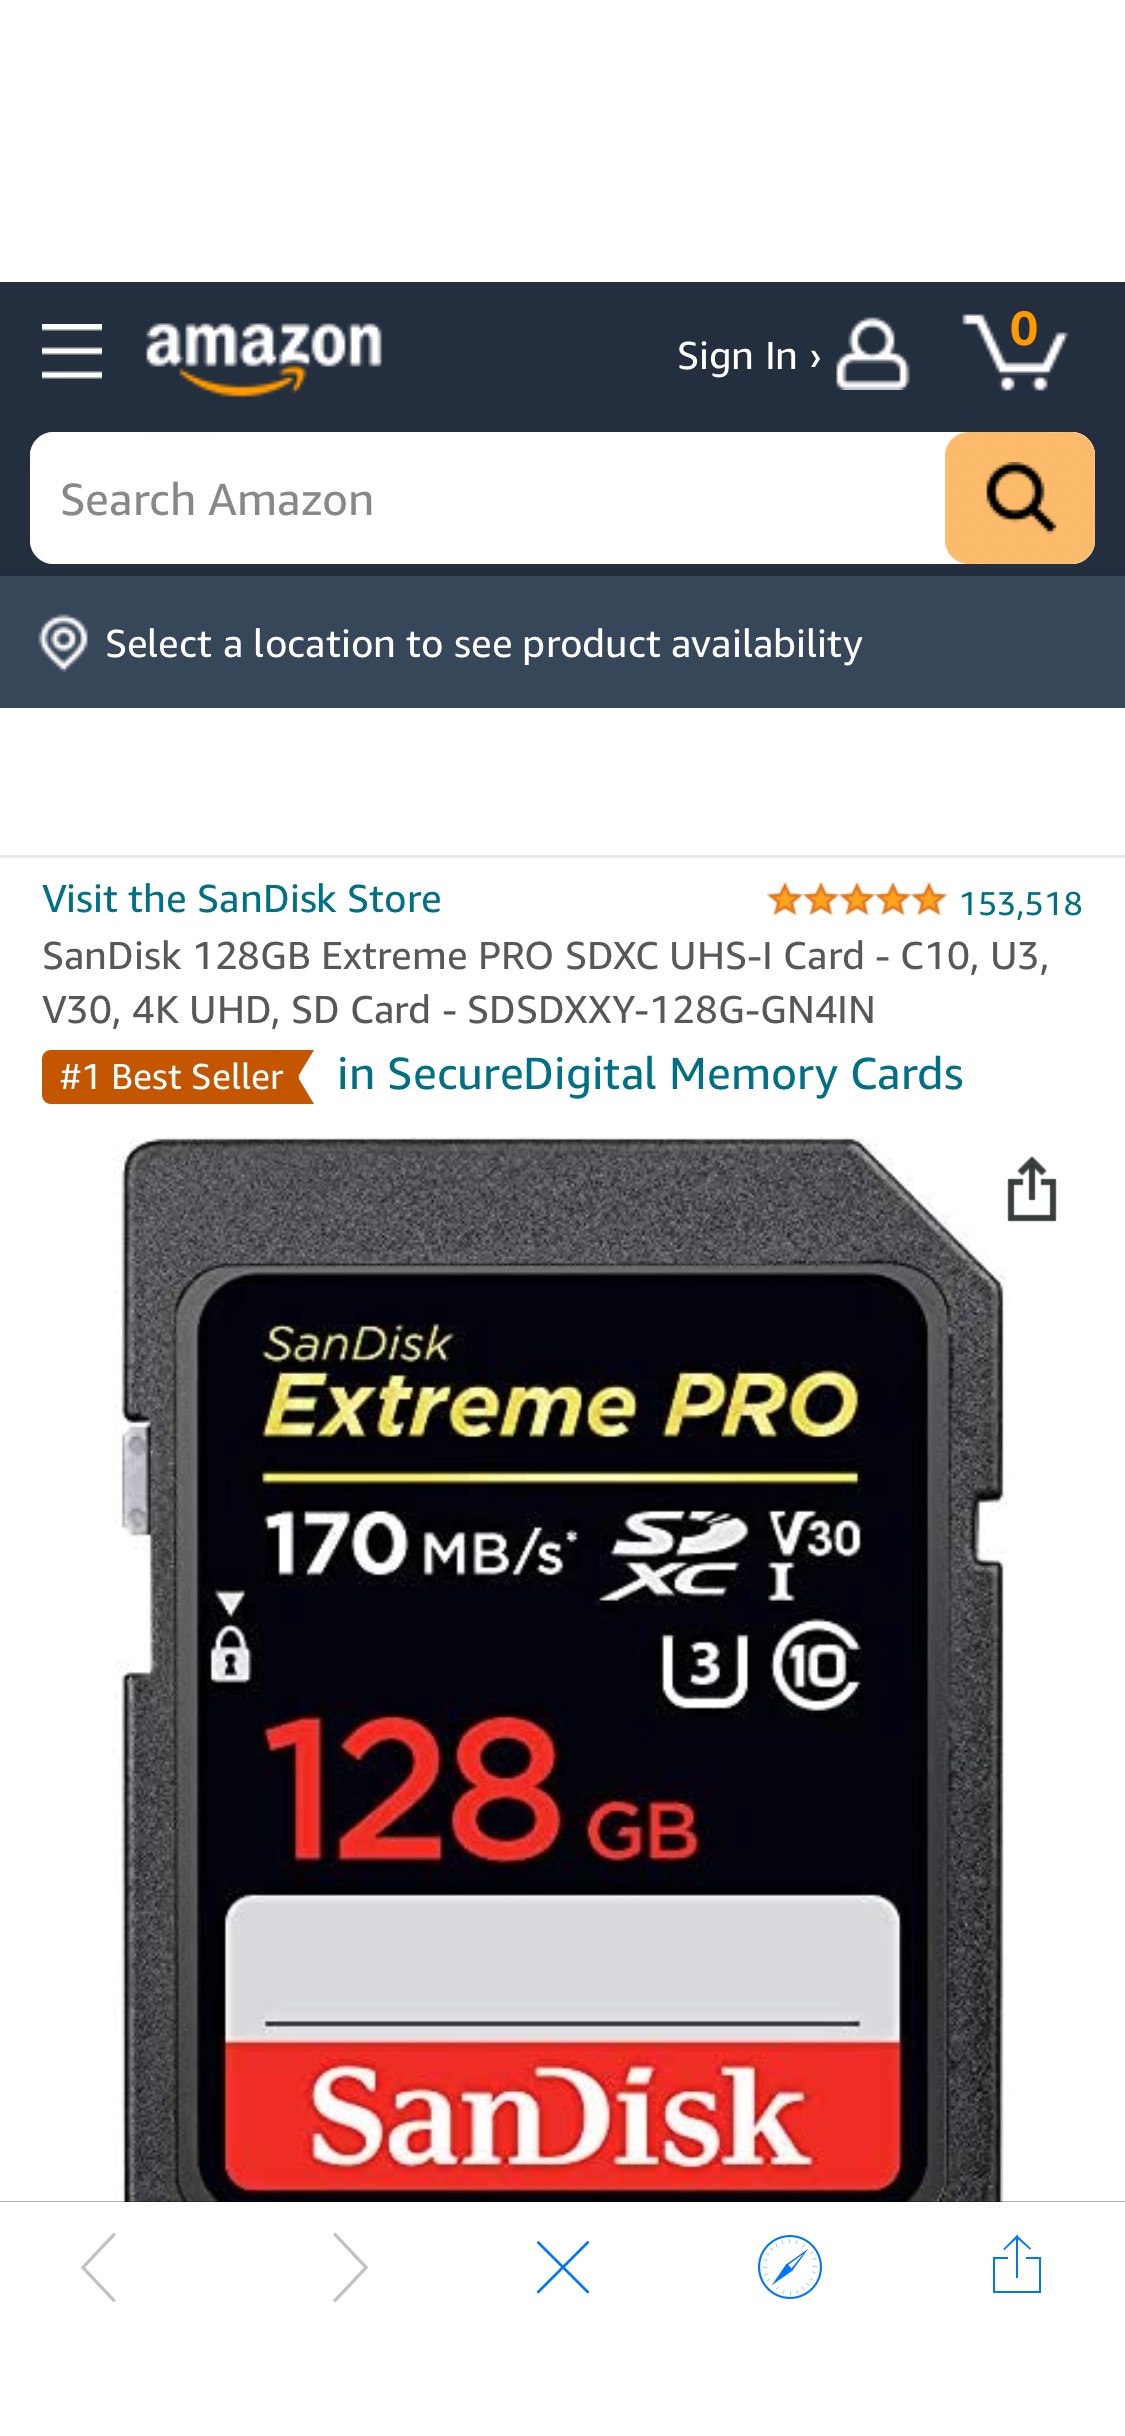 Amazon.com: SanDisk 128GB Extreme PRO SDXC UHS-I Card - C10, U3, V30, 4K UHD, SD Card